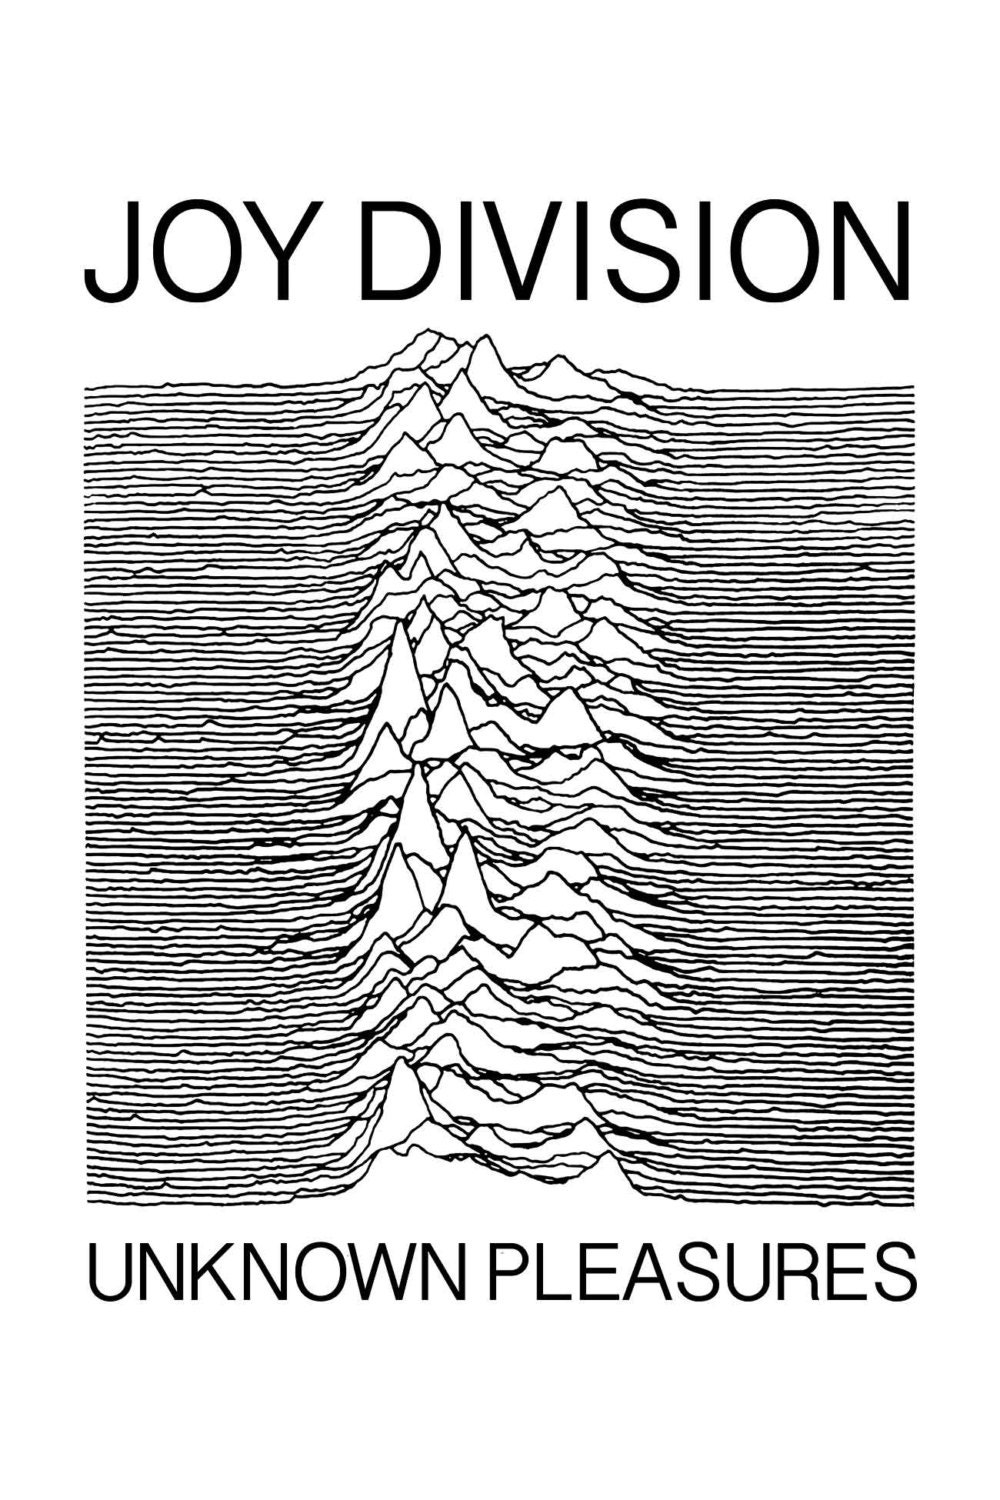 joy division unknown pleasures full album download